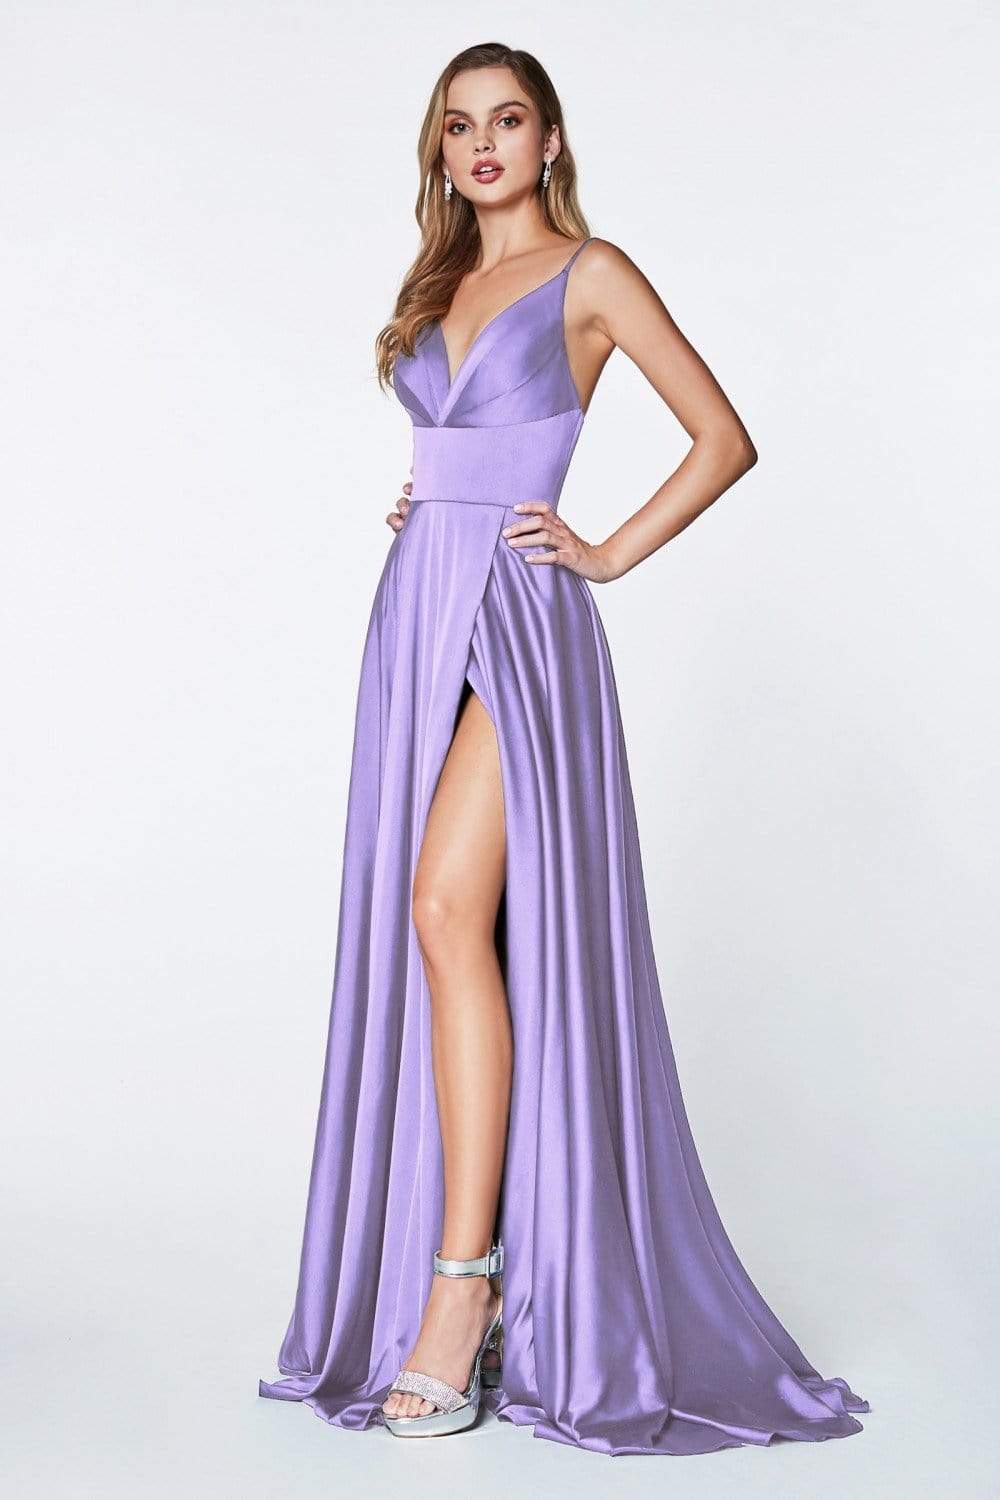 Cinderella Divine - 7472 Spaghetti Straps V Neck Wrap Satin Gown Bridesmaid Dresses 2 / Lavender